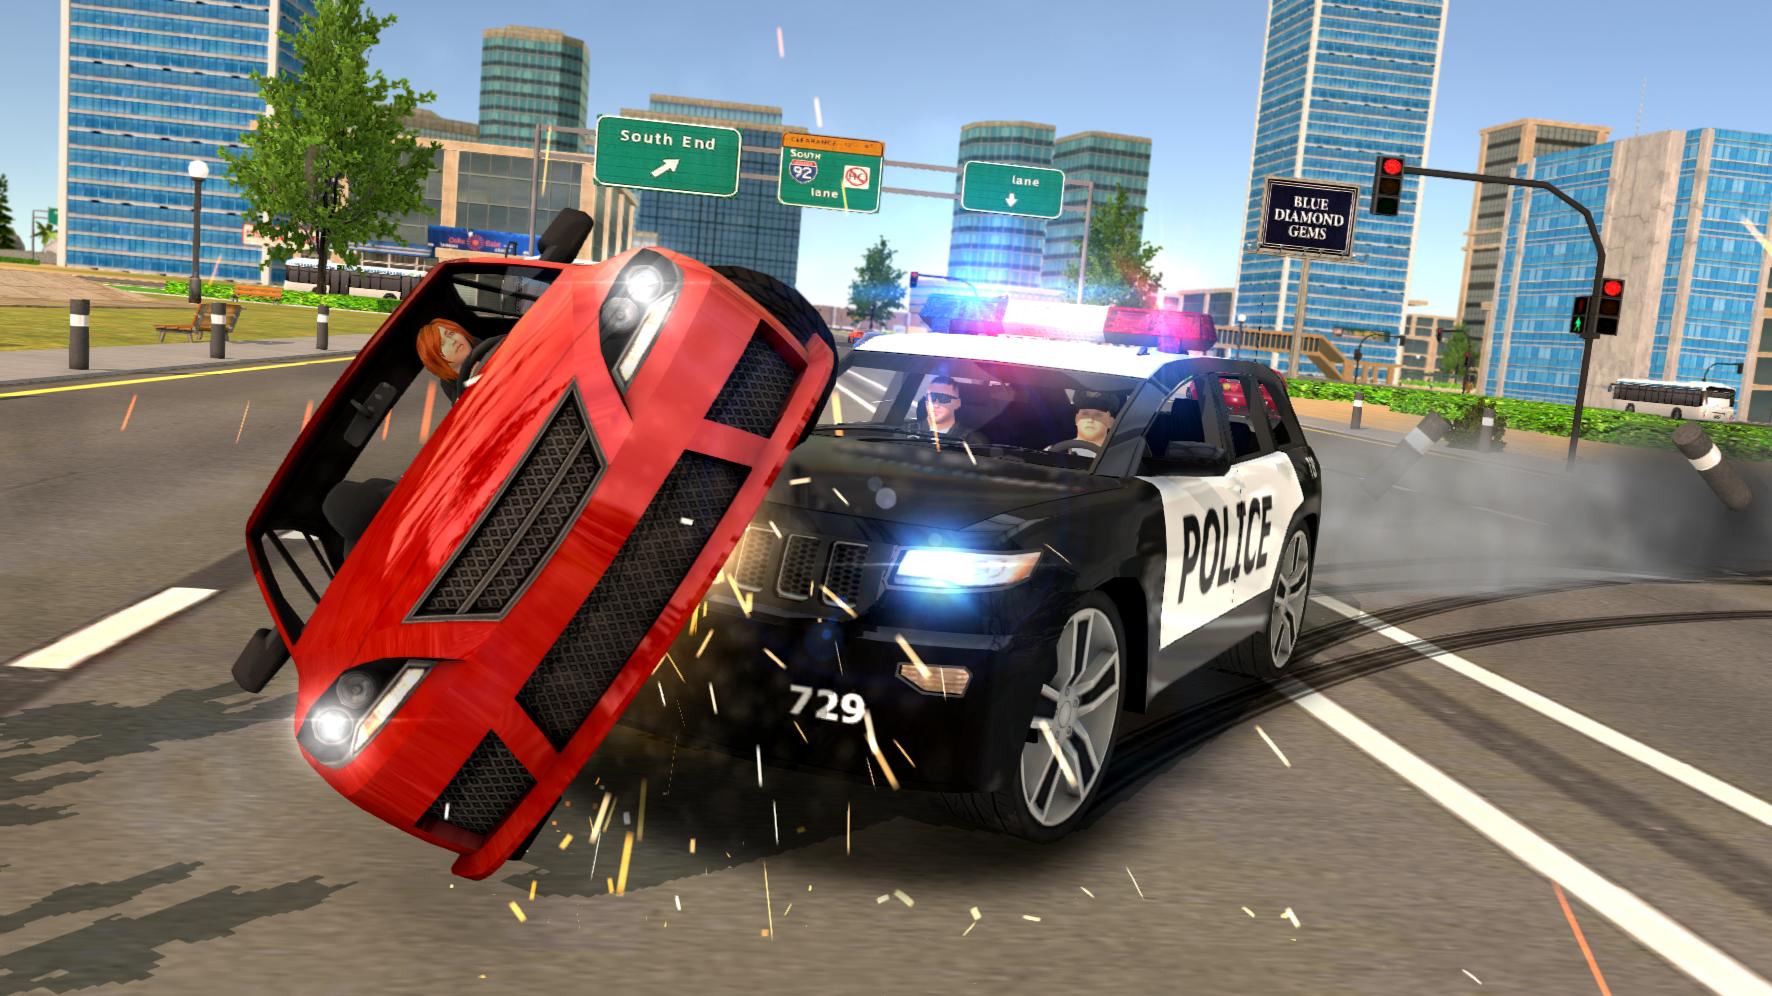 Game cảnh sát bắt cướp là một trò chơi giải trí thú vị và hấp dẫn, cho phép bạn nhập vai làm cảnh sát và đấu tranh chống lại các tên cướp đang lẩn trốn trong thành phố. Hãy trải nghiệm cảm giác đầy thử thách và phấn khích khi đuổi bắt và khống chế những tên tội phạm này bạn nhé!